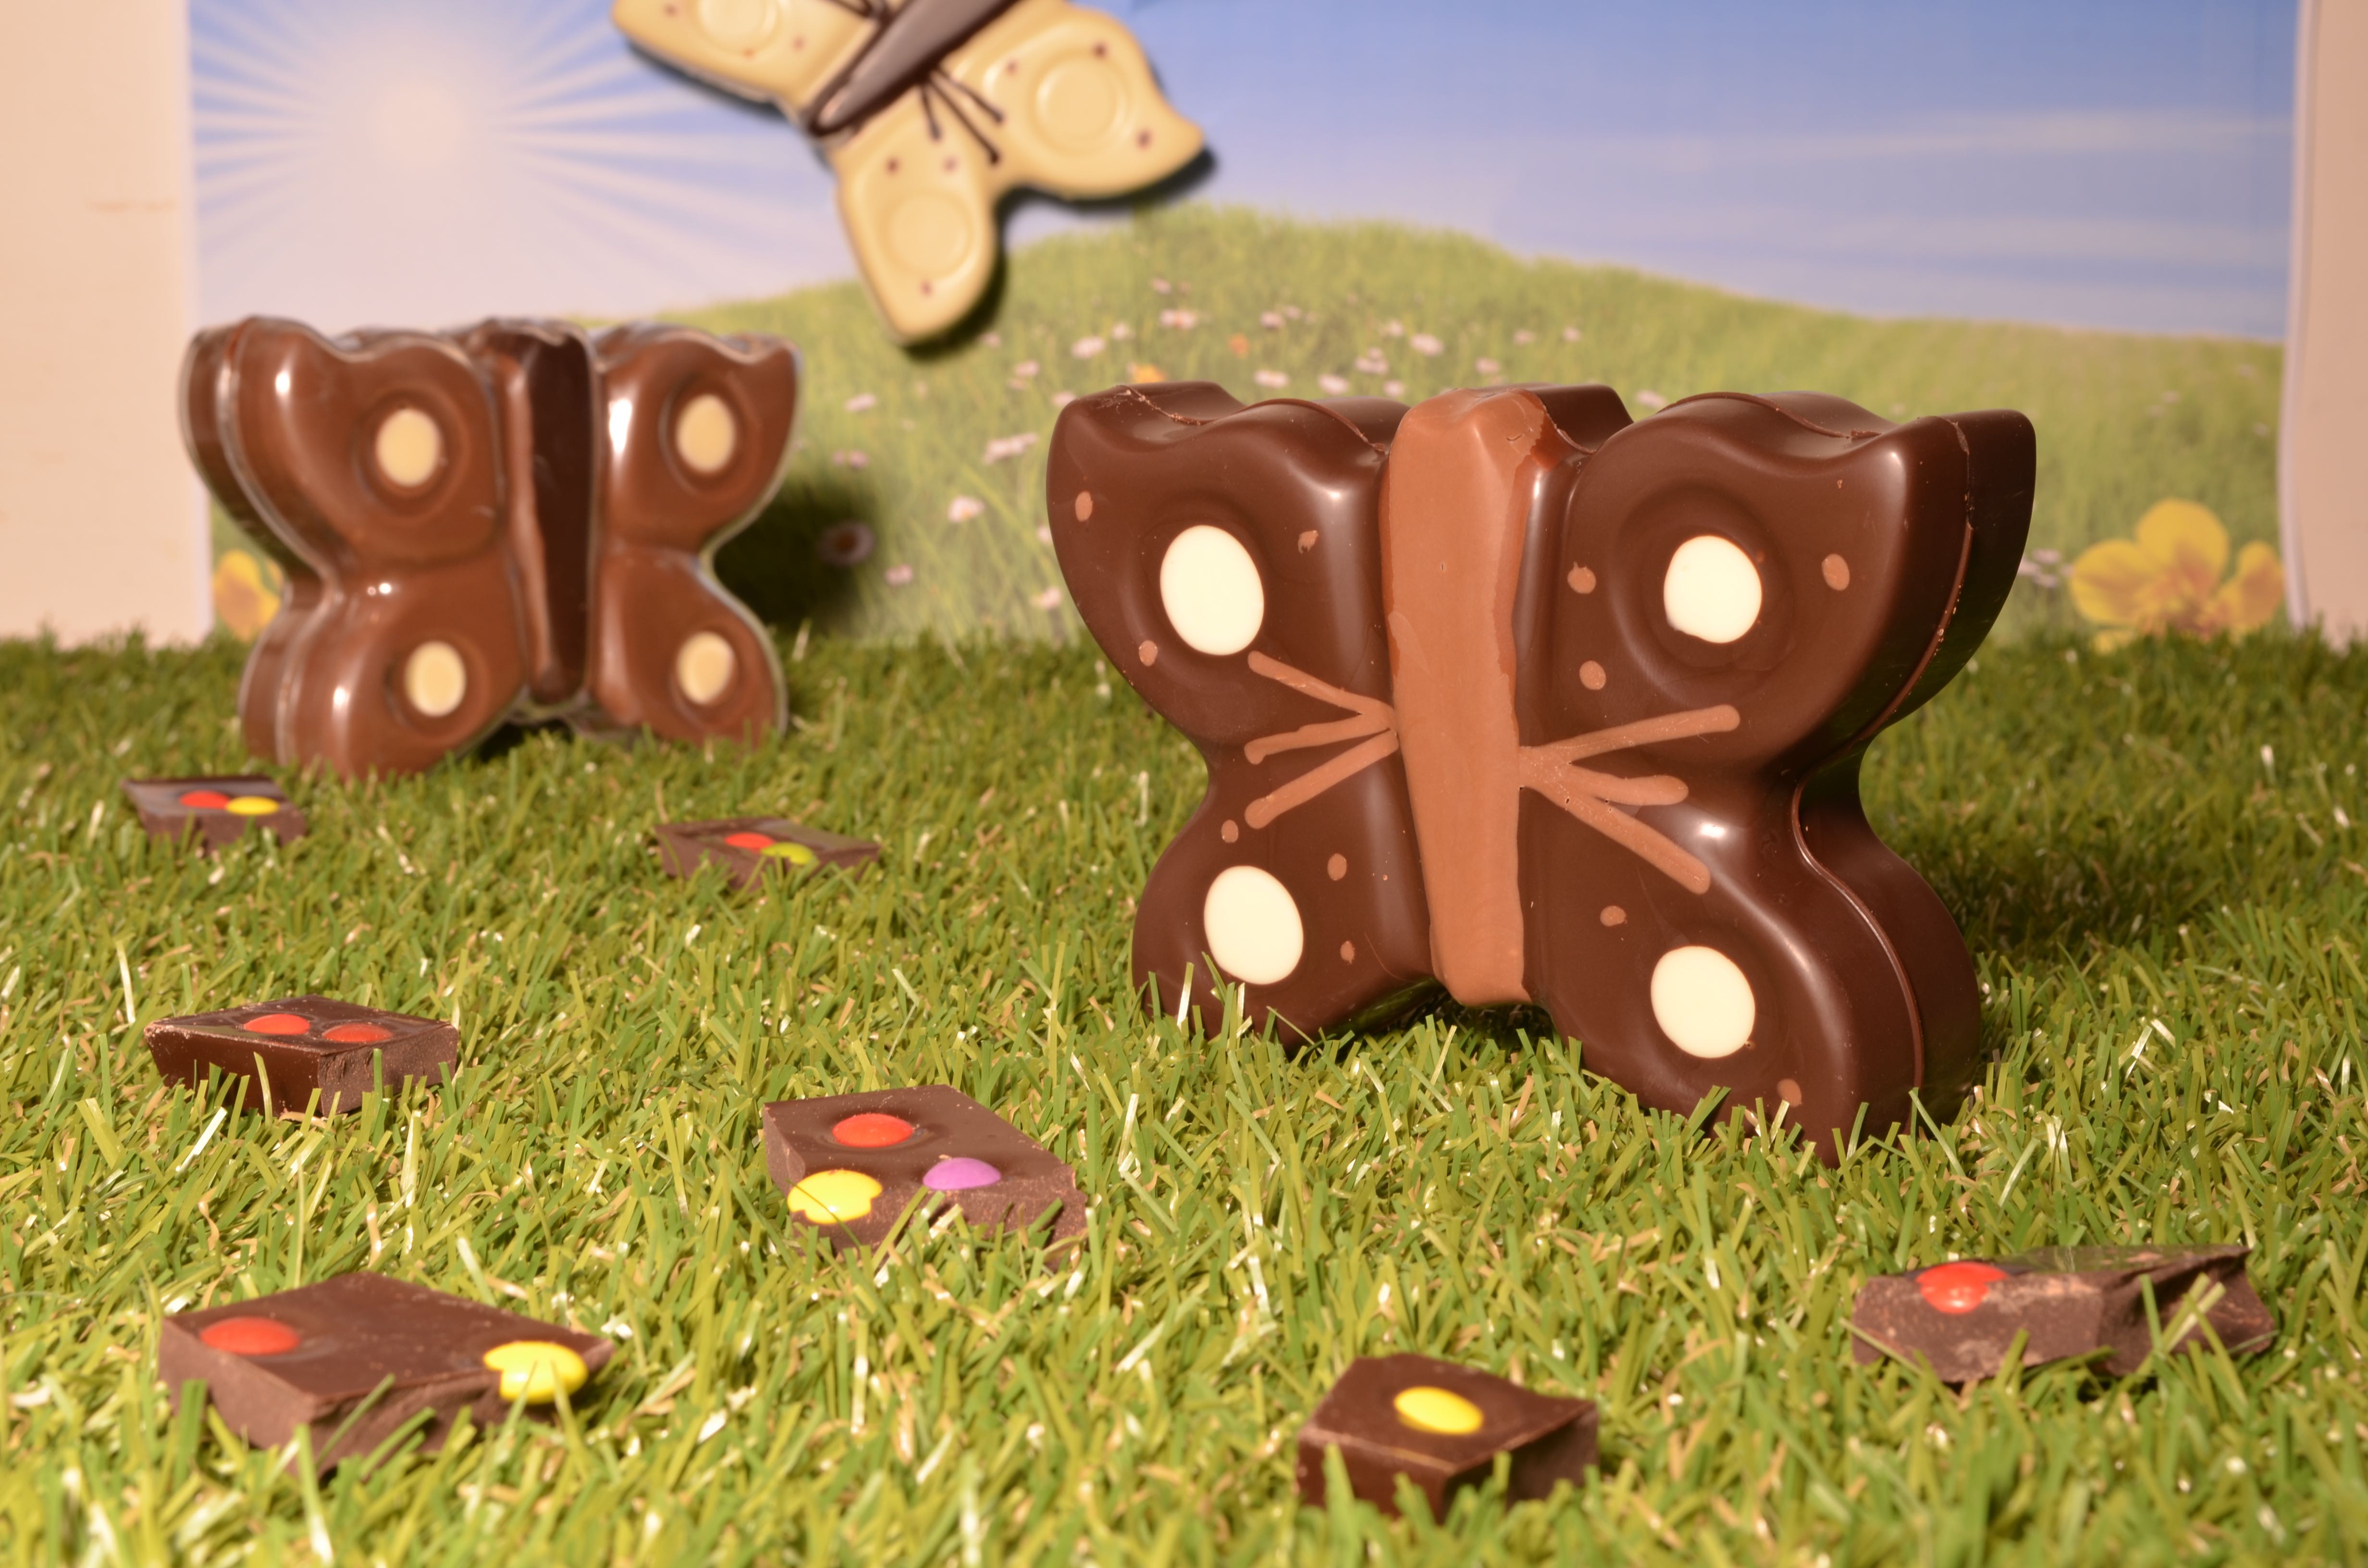 Atelier chocolat Bruges - Préparez votre chocolat avec Choco-Story